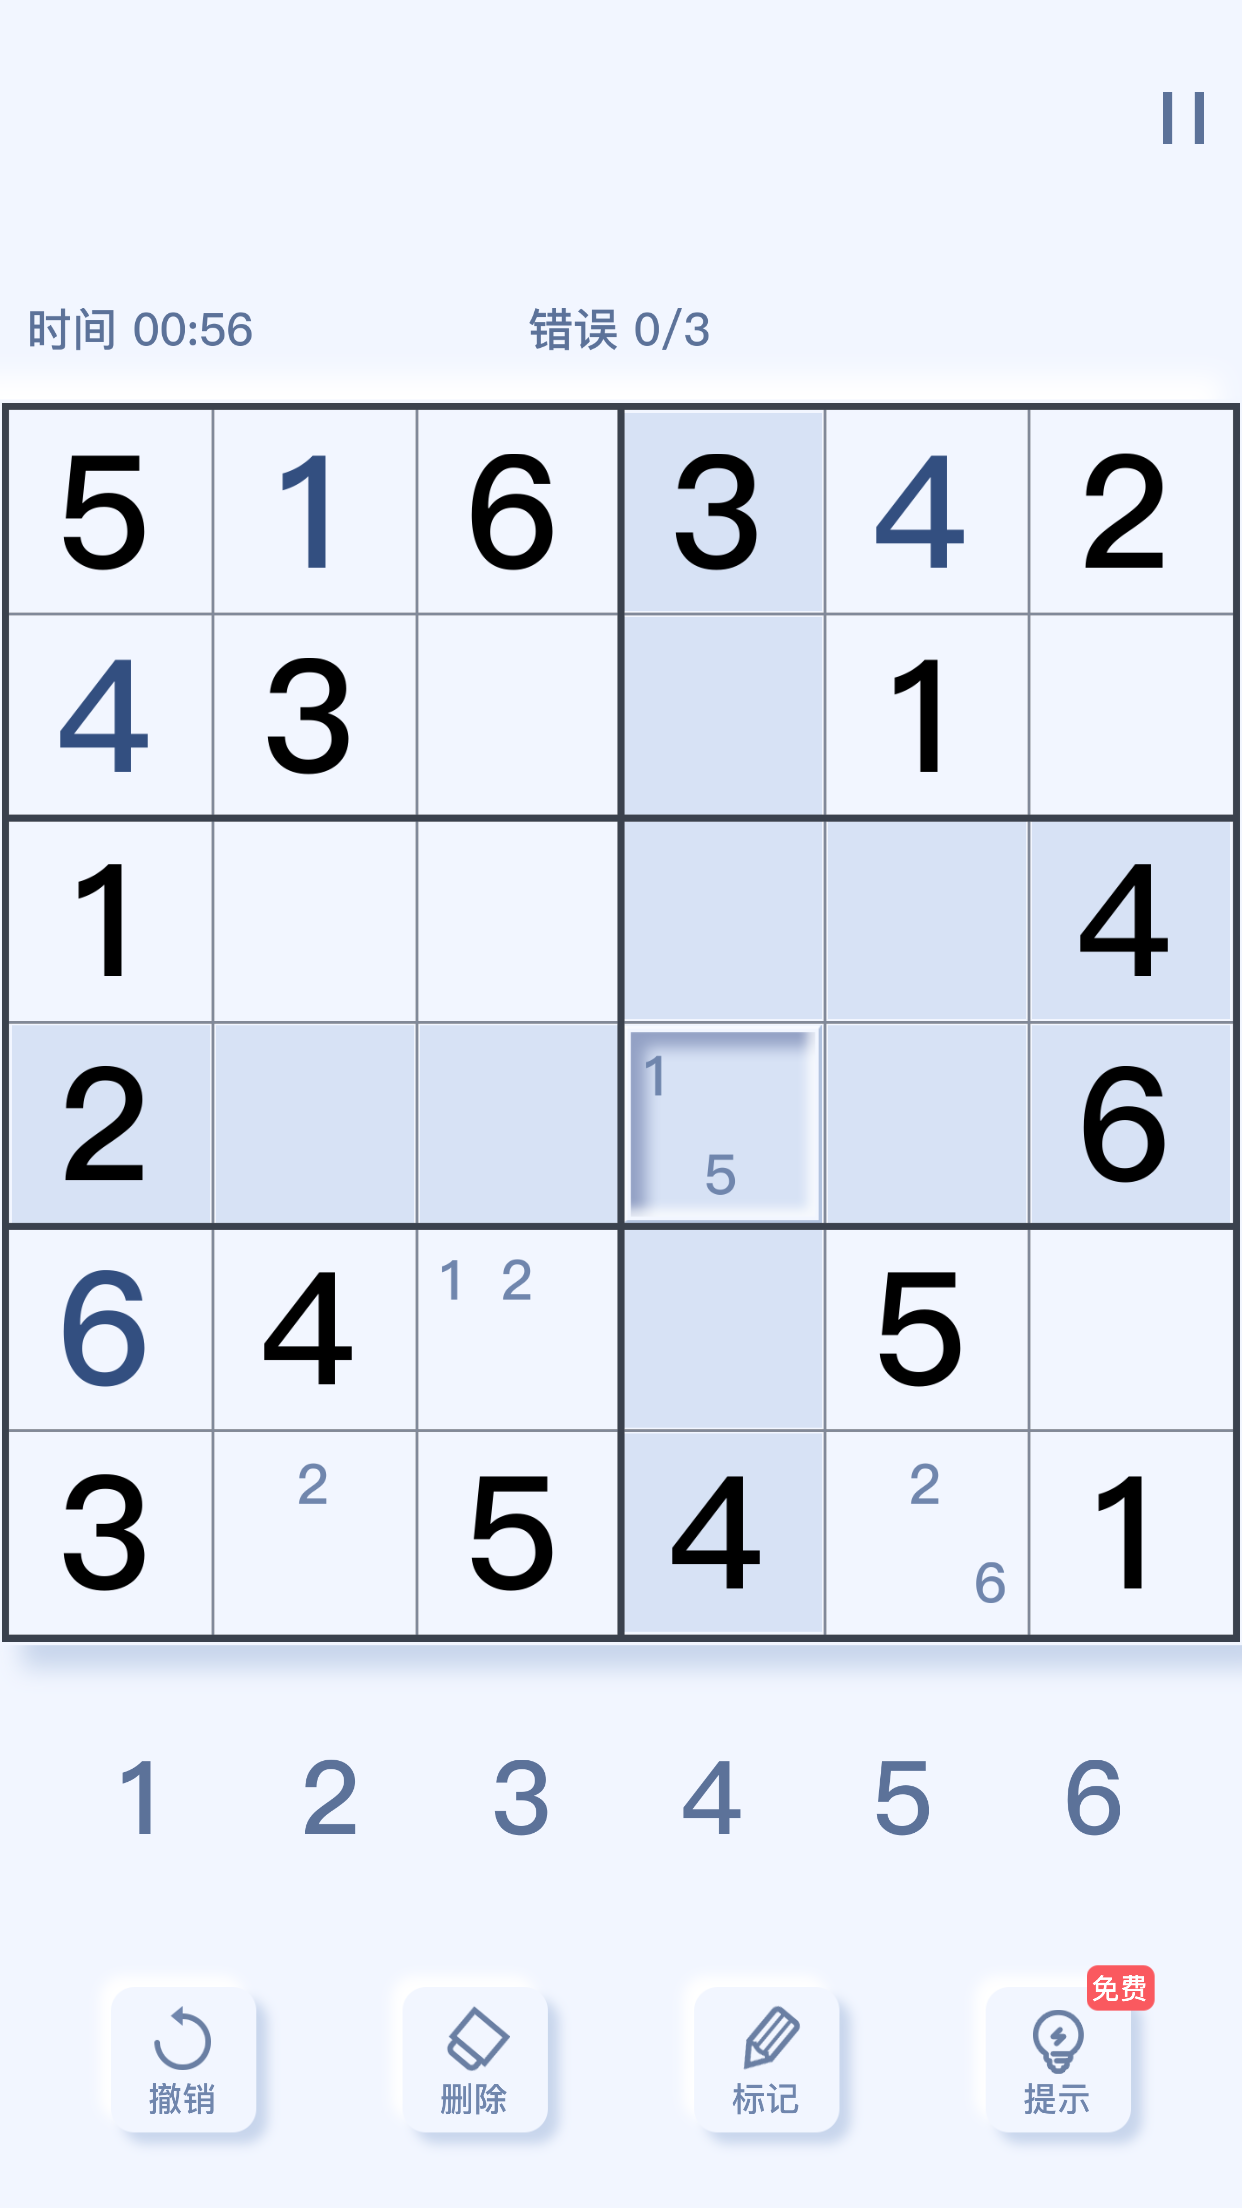 Screenshot 1 of sudoku sở thích 1.0.0